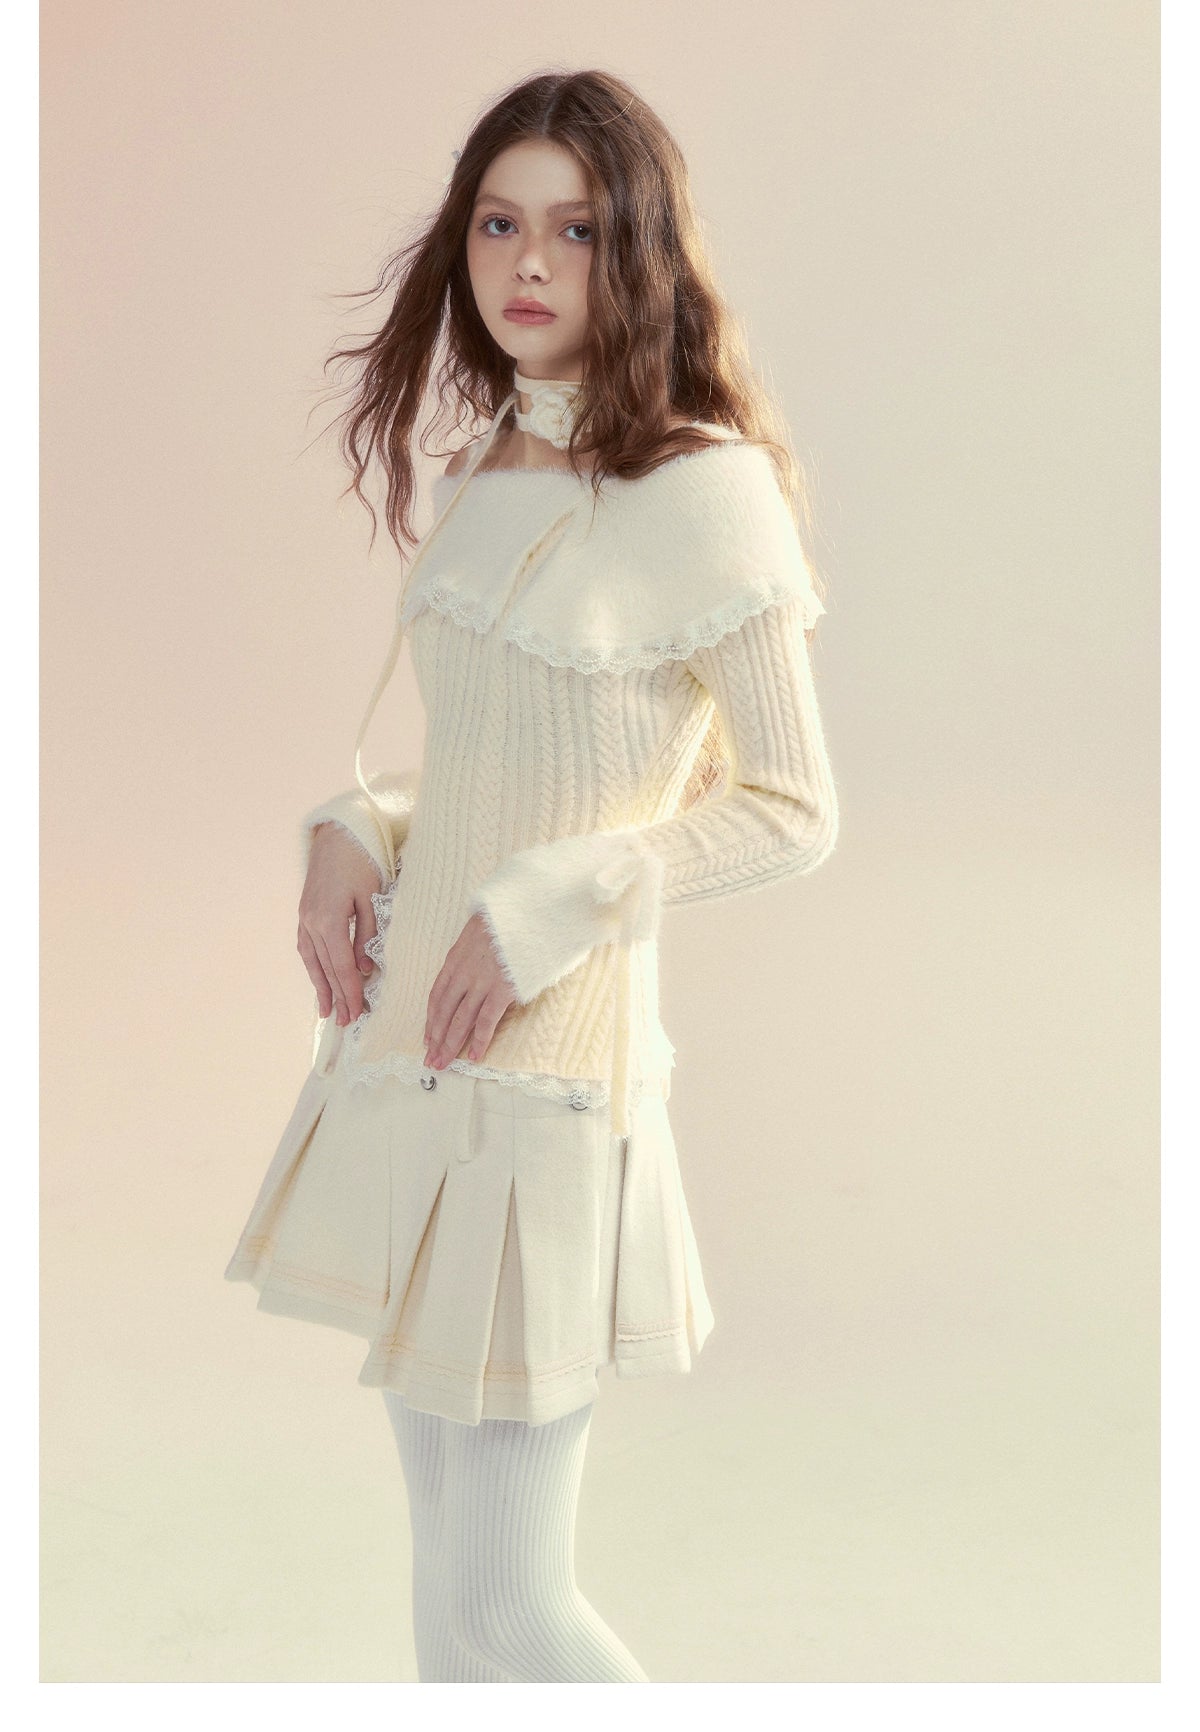 White Off-Shoulder Long sleeve Sweater - CHINASQUAD